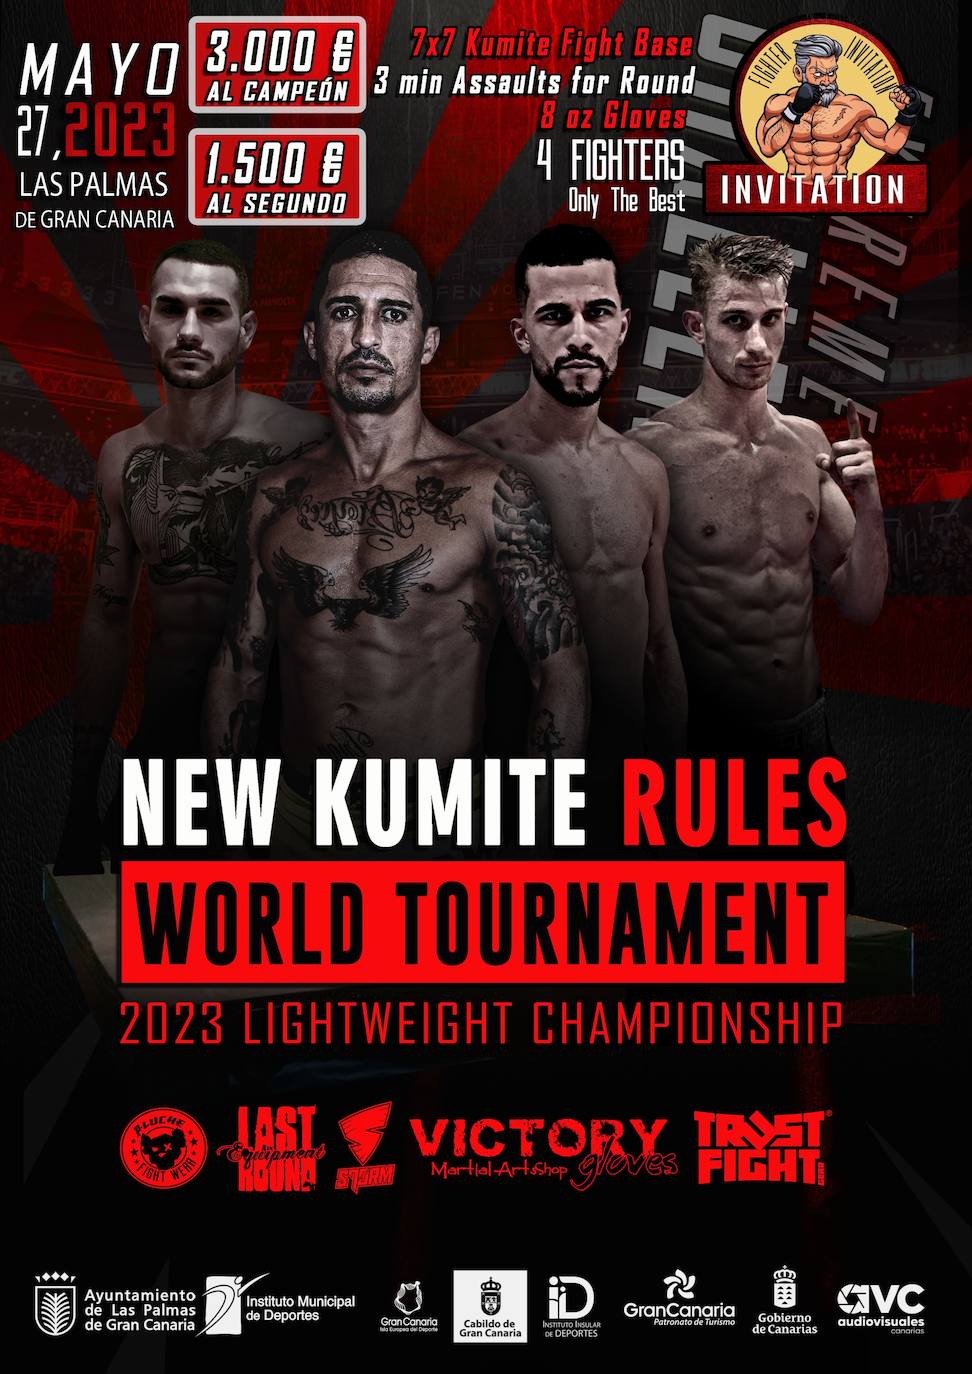 Imagen secundaria 2 - New Kumite Rules repite este sábado con los mejores luchadores